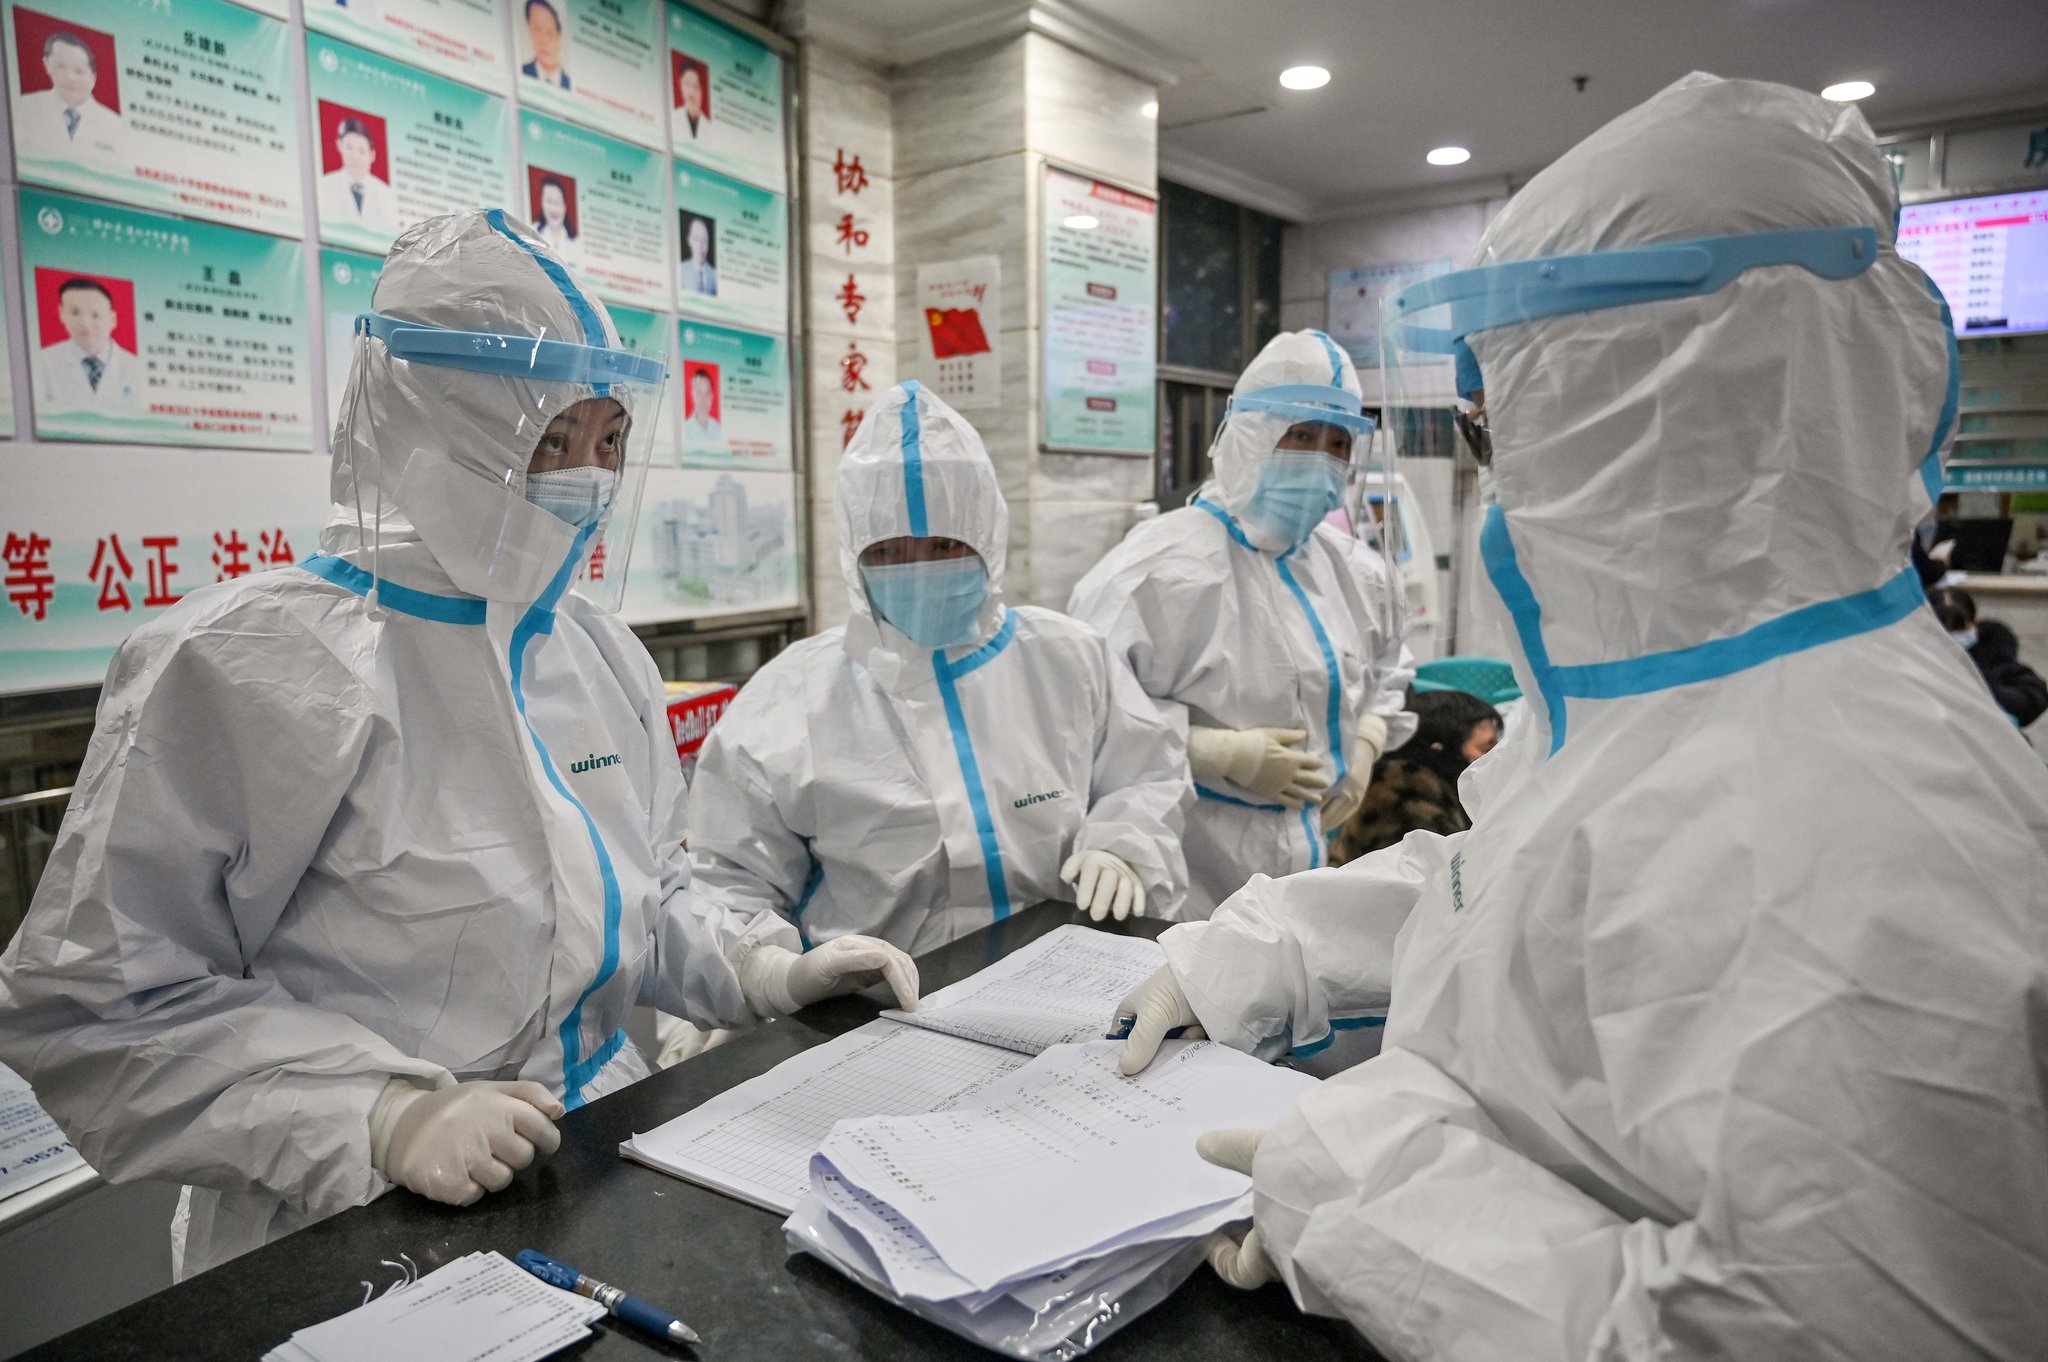 La Comisión Nacional de Salud de China afirma una disminución de casos de coronavirus en el país. Foto: Hector Retamal/Agence France-Presse — Getty Images